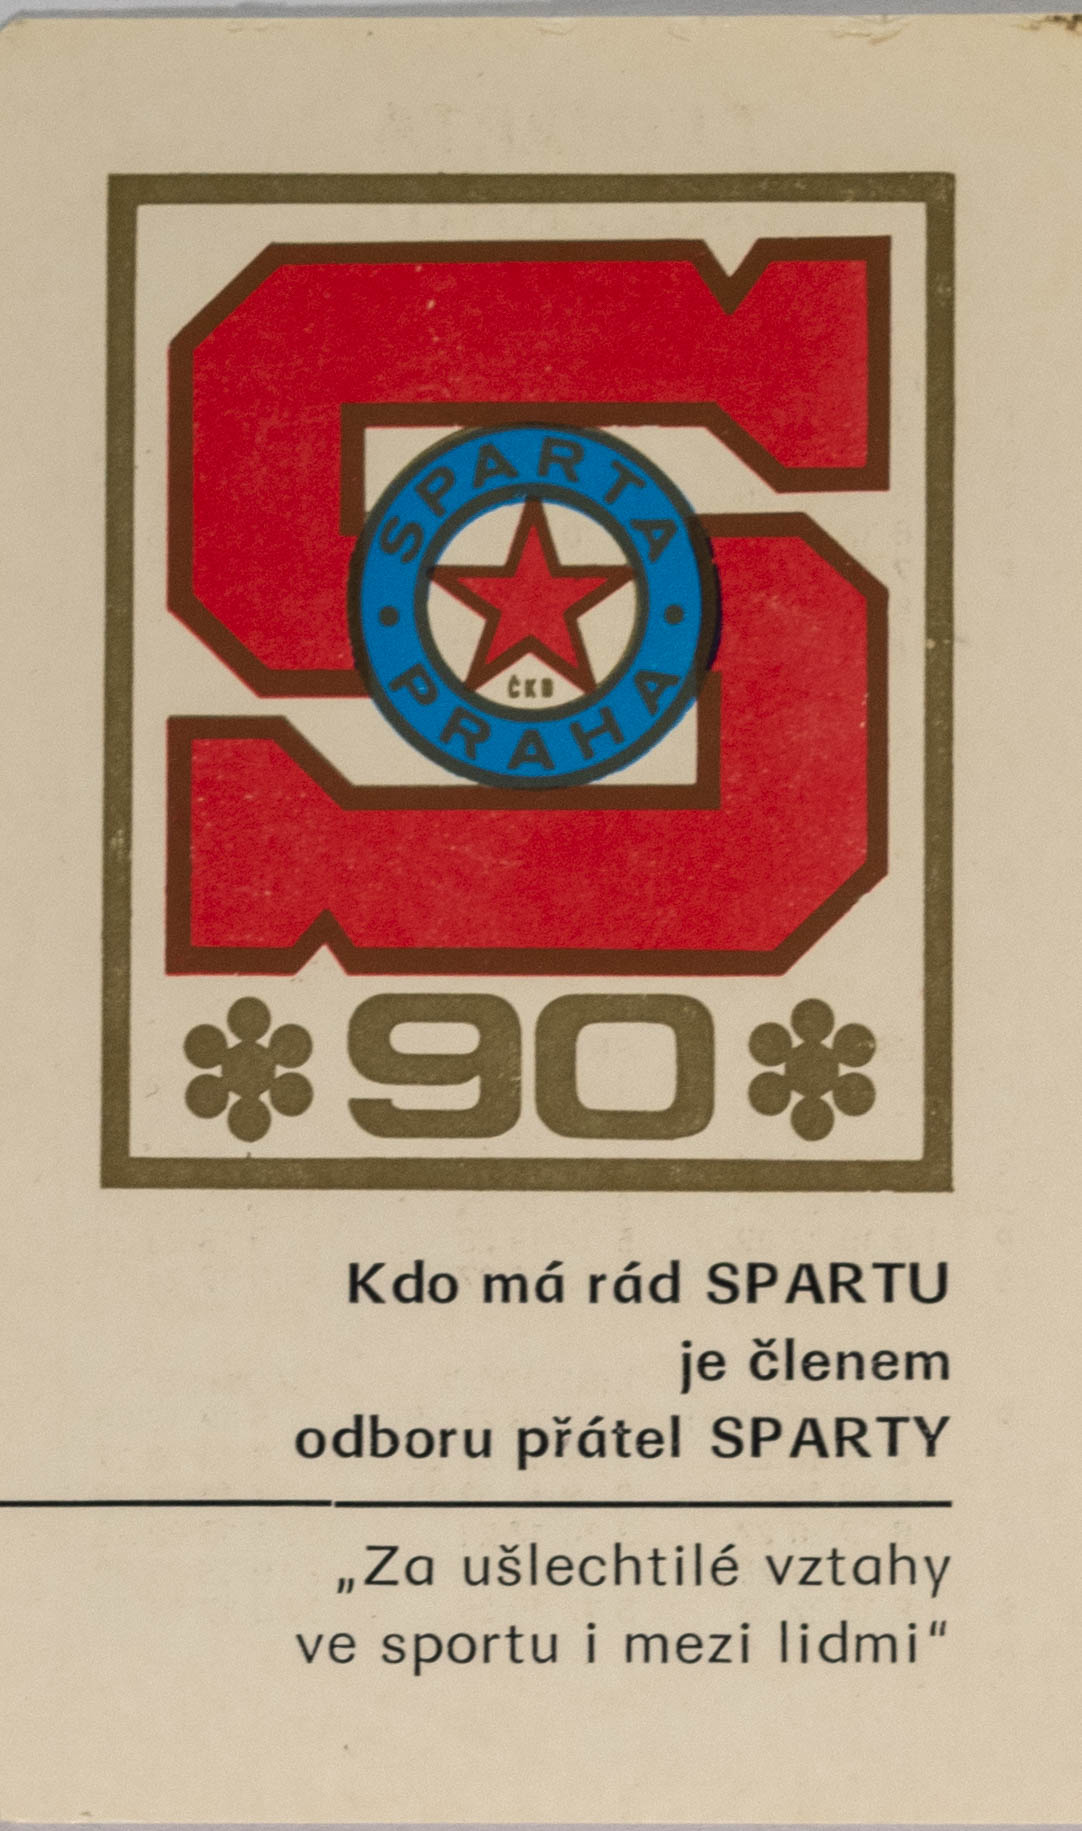 Kalendář Odbor přátel Sparty 1983, 90 let